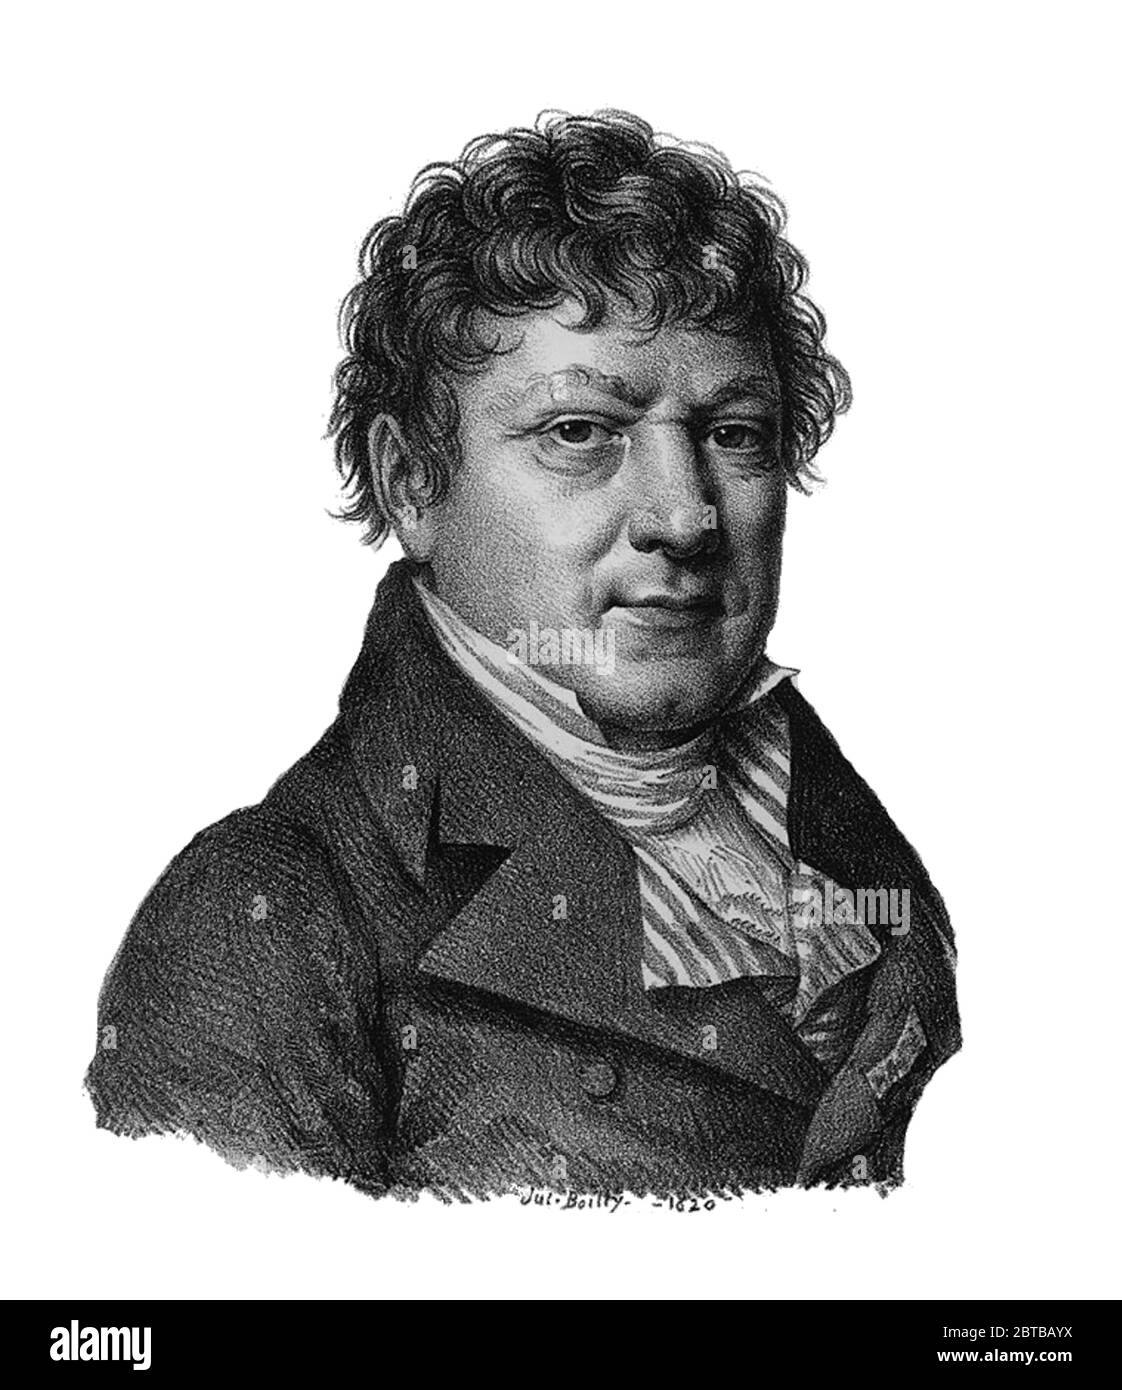 1820, FRANCE : The french mathematician and astronomer Jean-Baptiste Joseph Delambre ( 1749 - 1822 ) . Engraving by Jules Boilty .- Jean Baptiste - SCIENZA - ritratto - portrait - SCIENZIATO - SCIENZA -  SCIENCE - SCIENTIST- HISTORY -  foto storiche  - MATEMATICO - MATEMATICA - MATHEMATIC - MATHEMATICIAN  - mathematics - ASTRONOMIA - ASTRONOMY - ASTRONOMER - ASTRONOMO -  illustrazione - illustration - engraving - incisione  - colletto - collar - engraving --- ARCHIVIO GBB Stock Photo